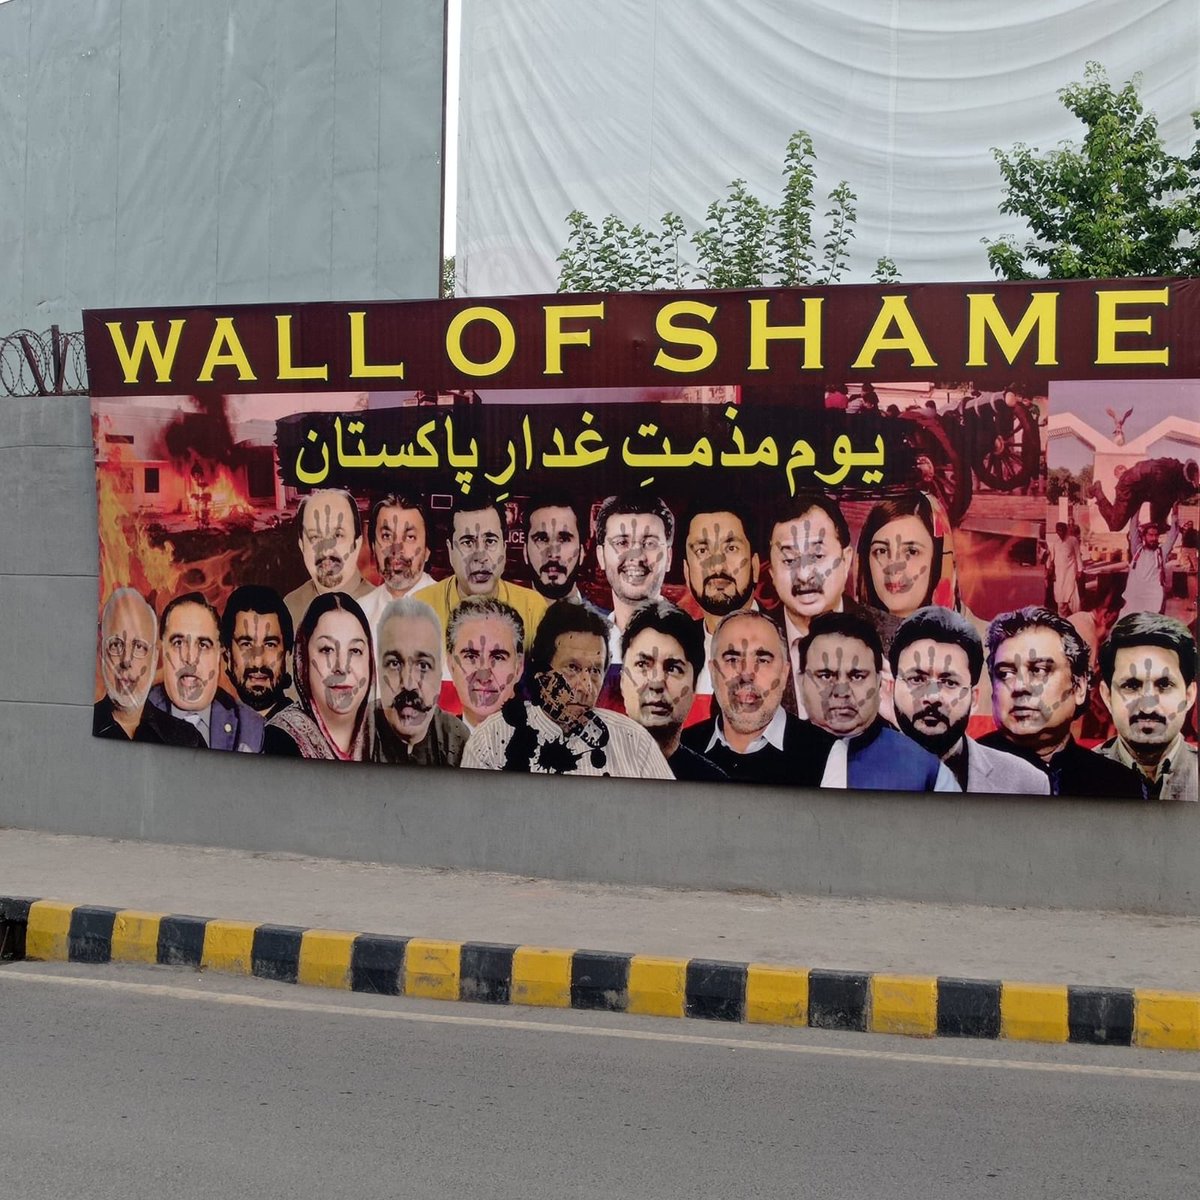 #wallofshame 
Rawalpindi